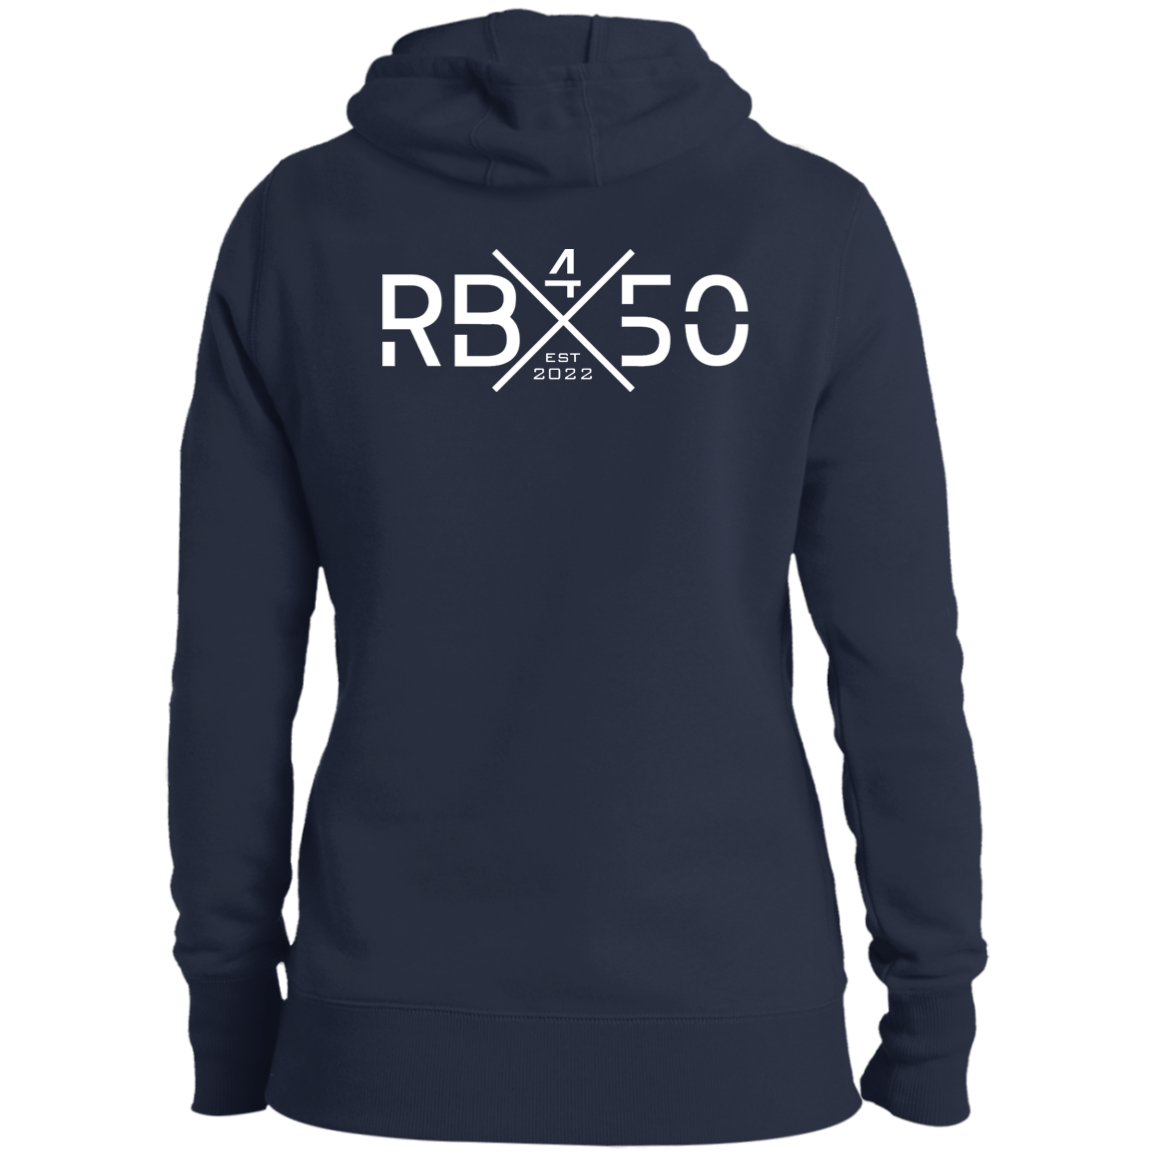 RB450 REAP Ladies' Pullover Hooded Sweatshirt